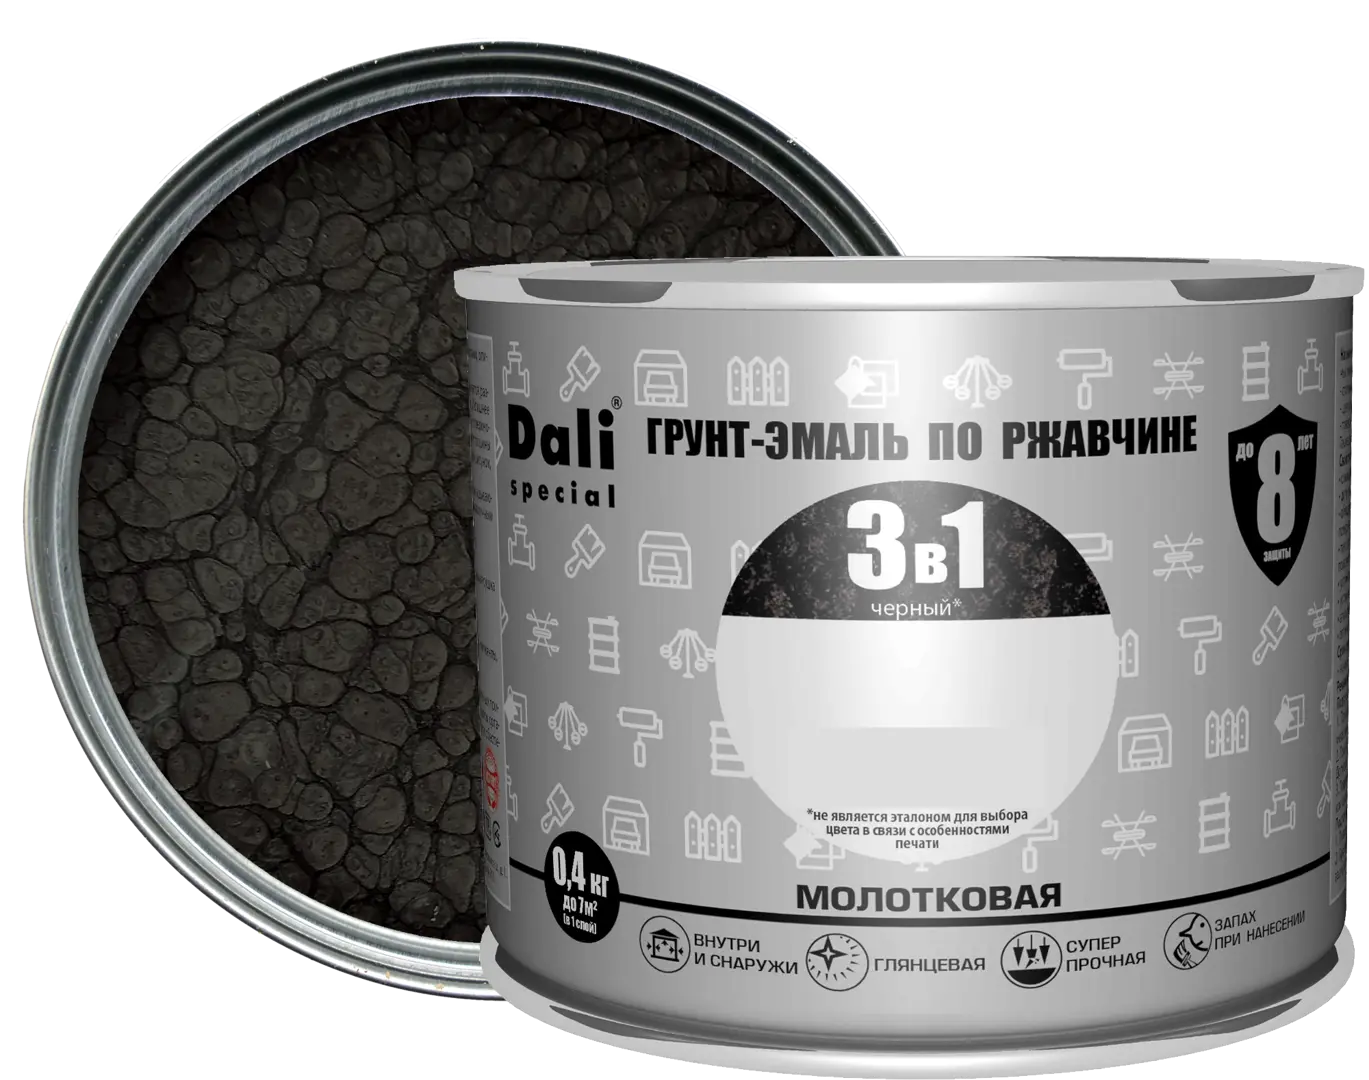 Грунт-эмаль по ржавчине 3 в 1 Dali Special молотковая цвет чёрный 0.4 кг банка для сыпучих продуктов dark 29×9×9 см чёрный